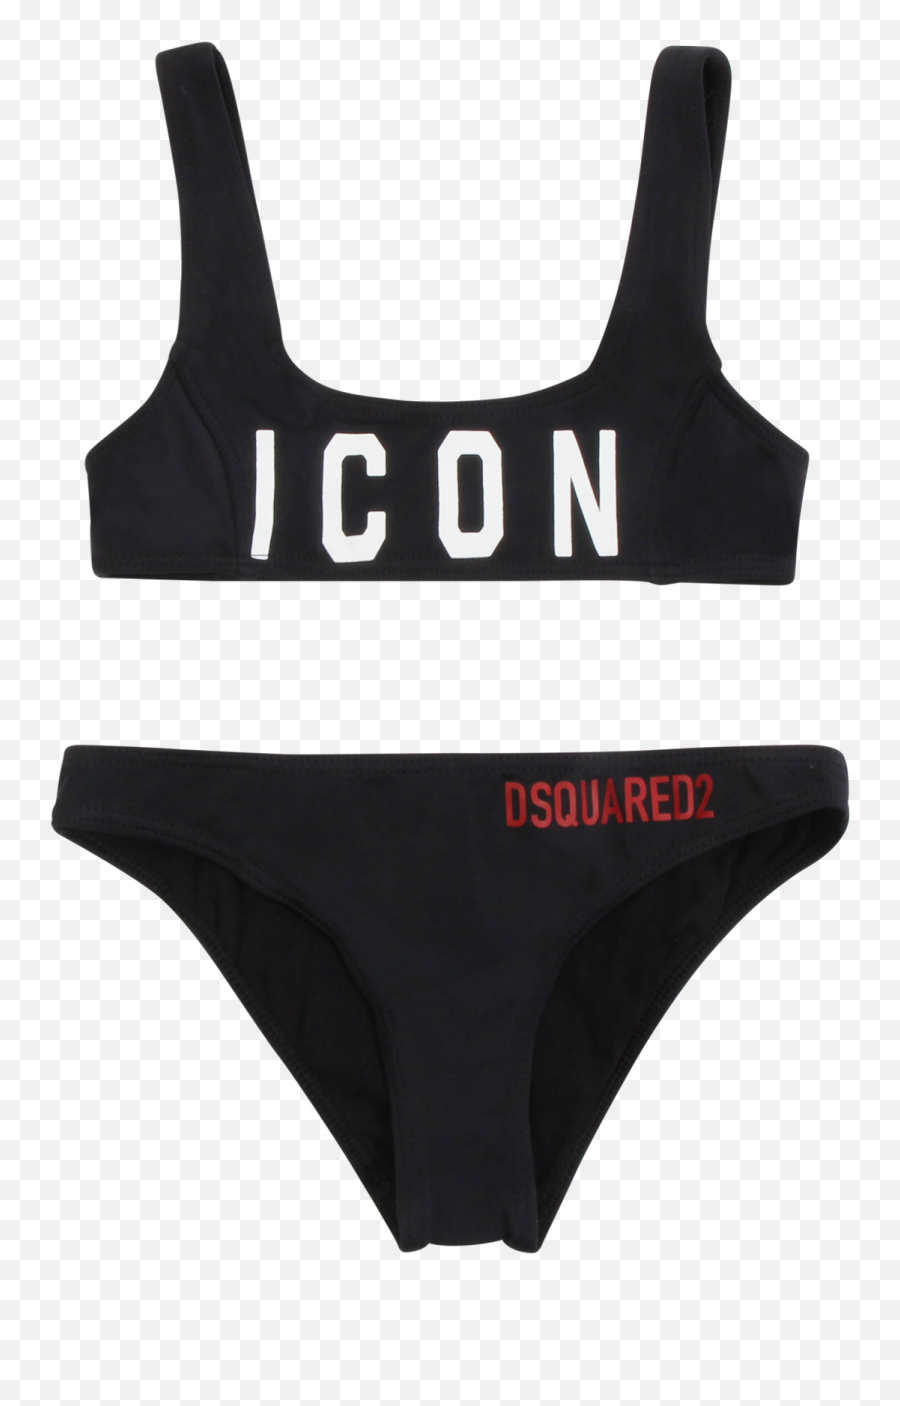 Bikini Icon - Solid Png,Bikini Icon